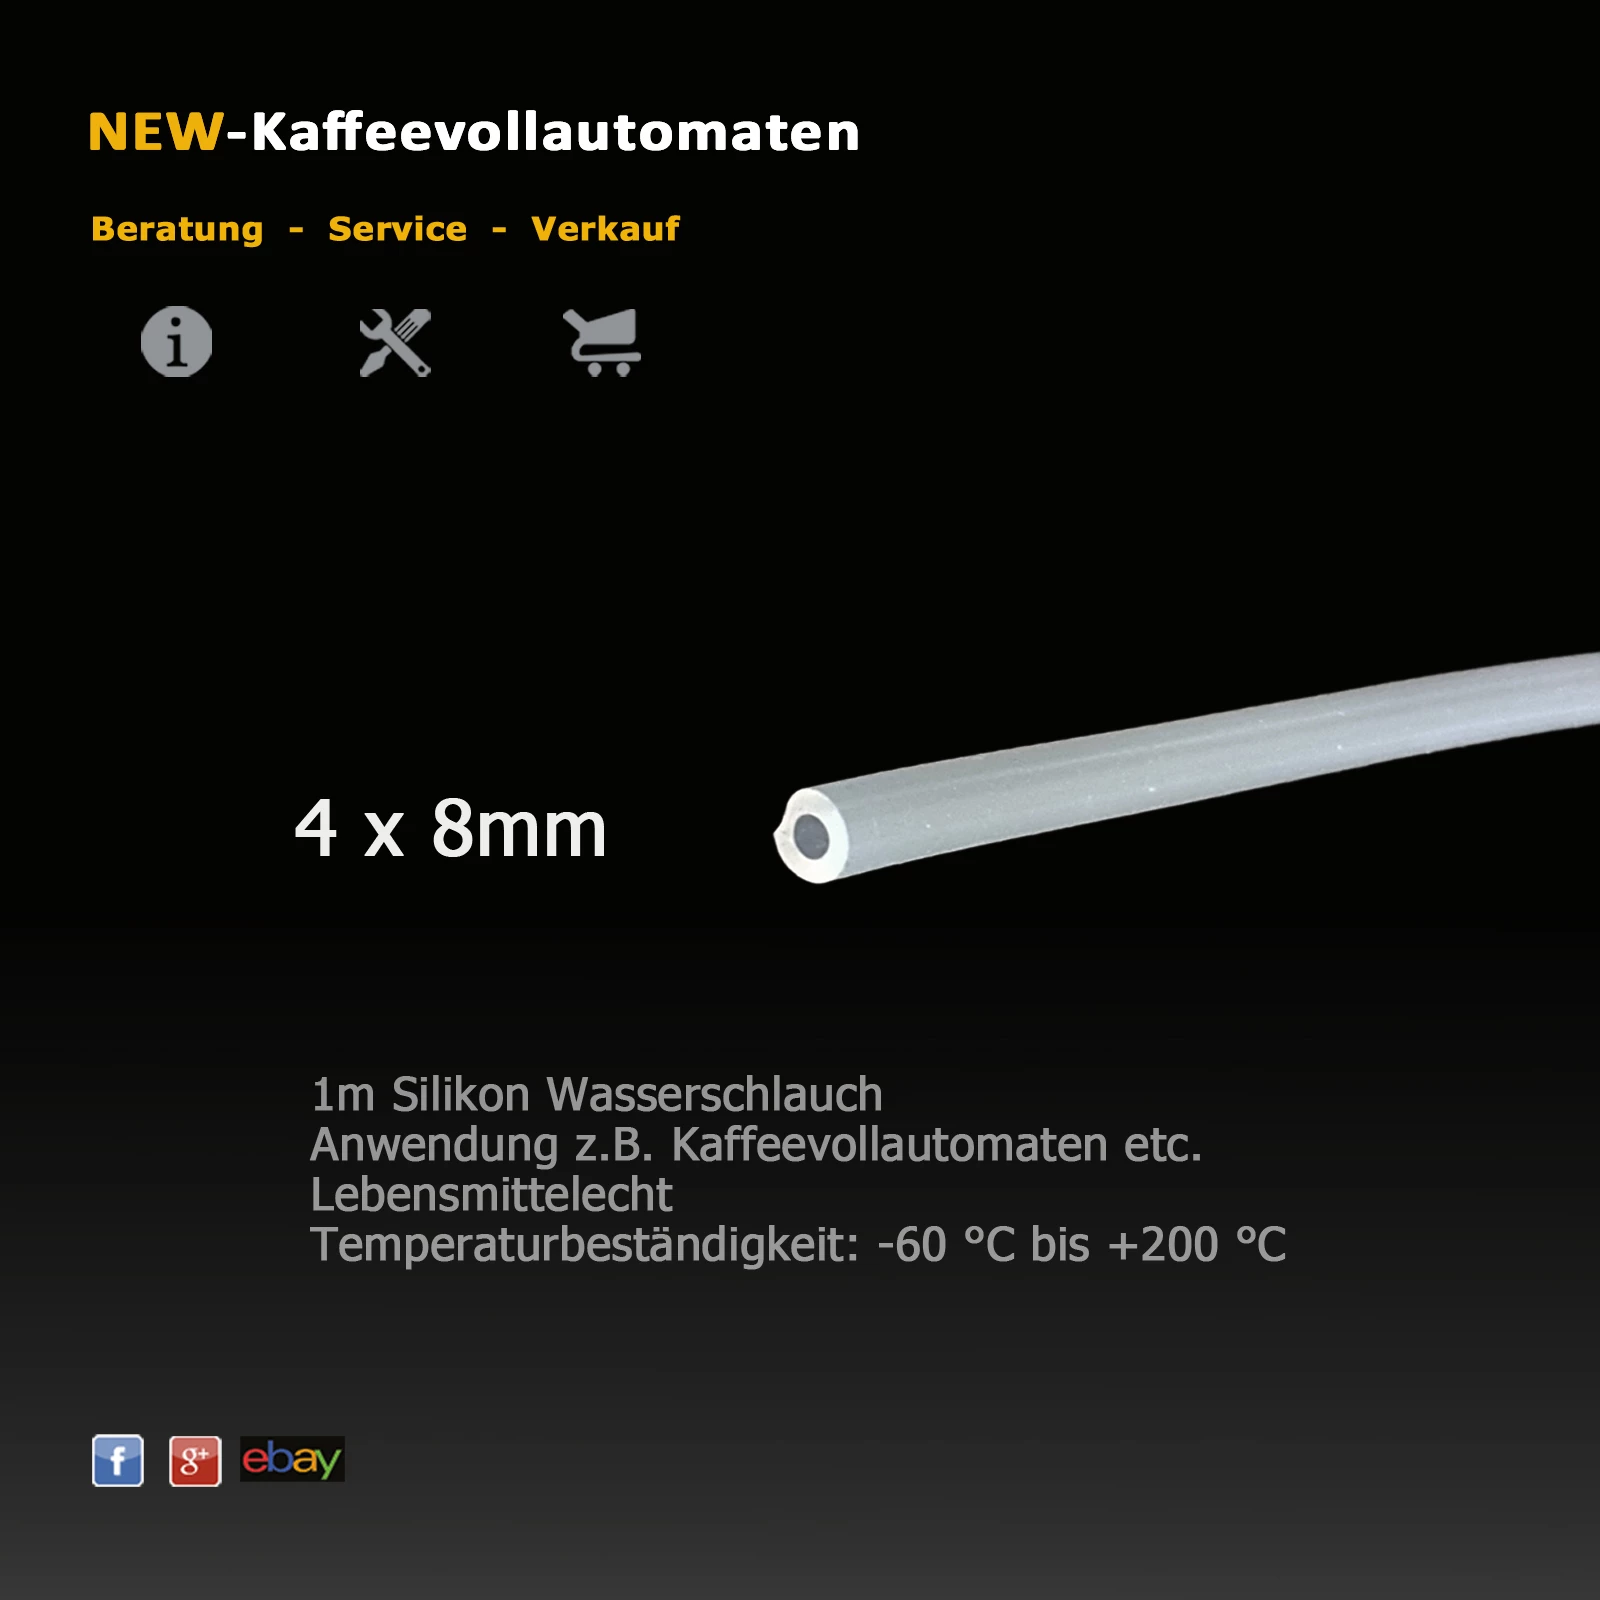 https://www.new-kaffeevollautomaten.de/pictures/original/52_02.webp?1702058735